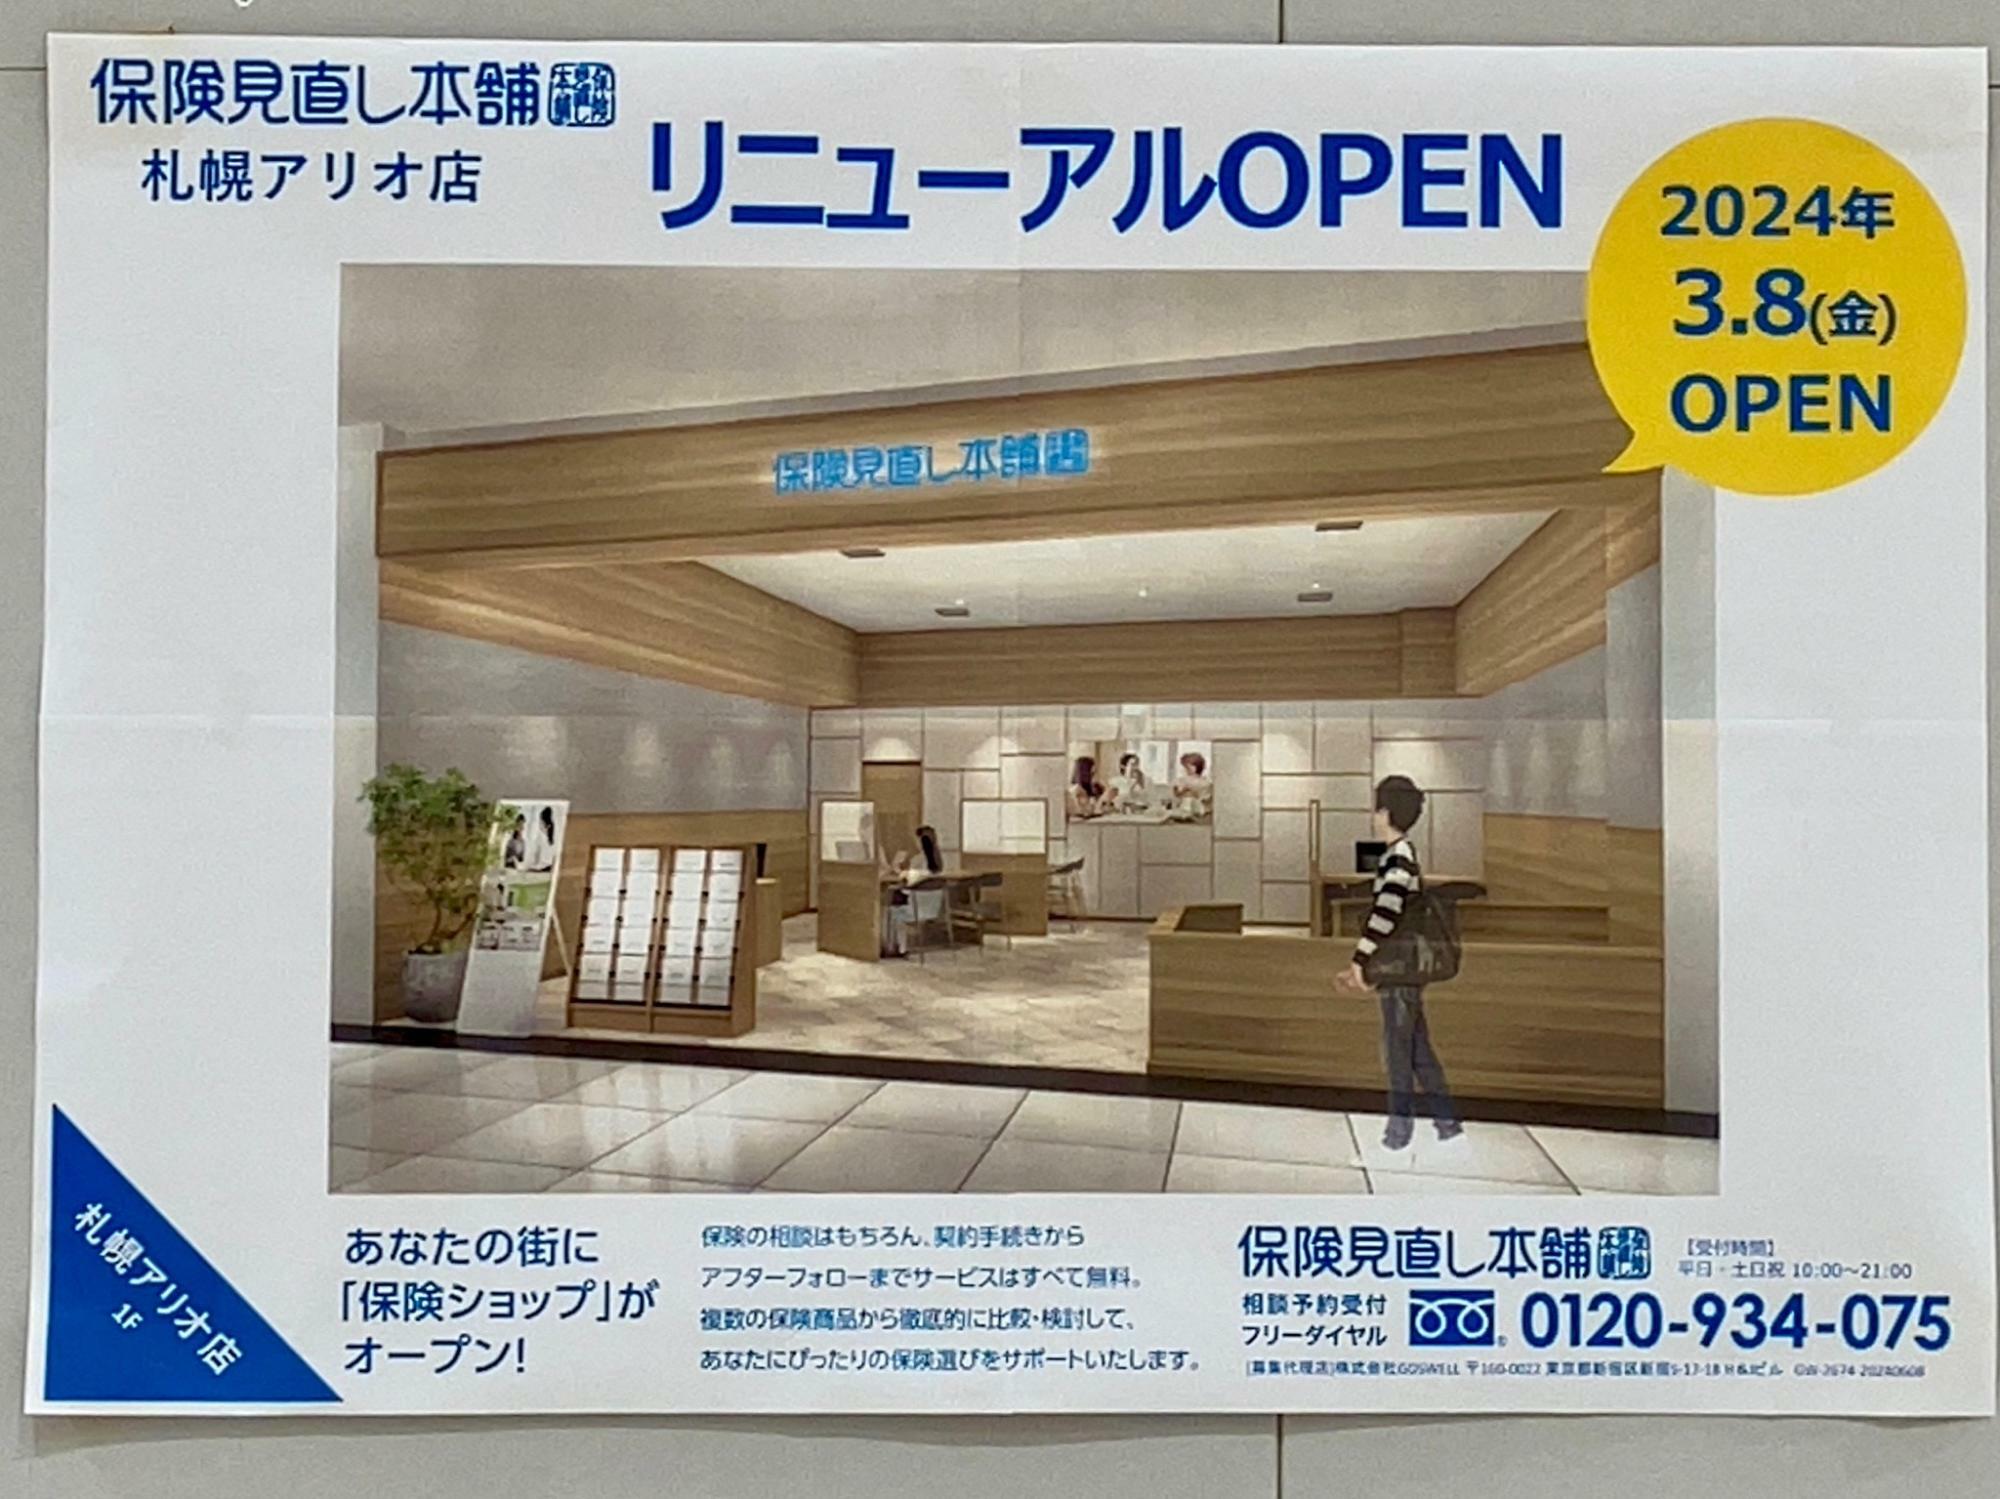 アリオ札幌の1階にリニューアルオープンする「保険見直し本舗 札幌アリオ店」